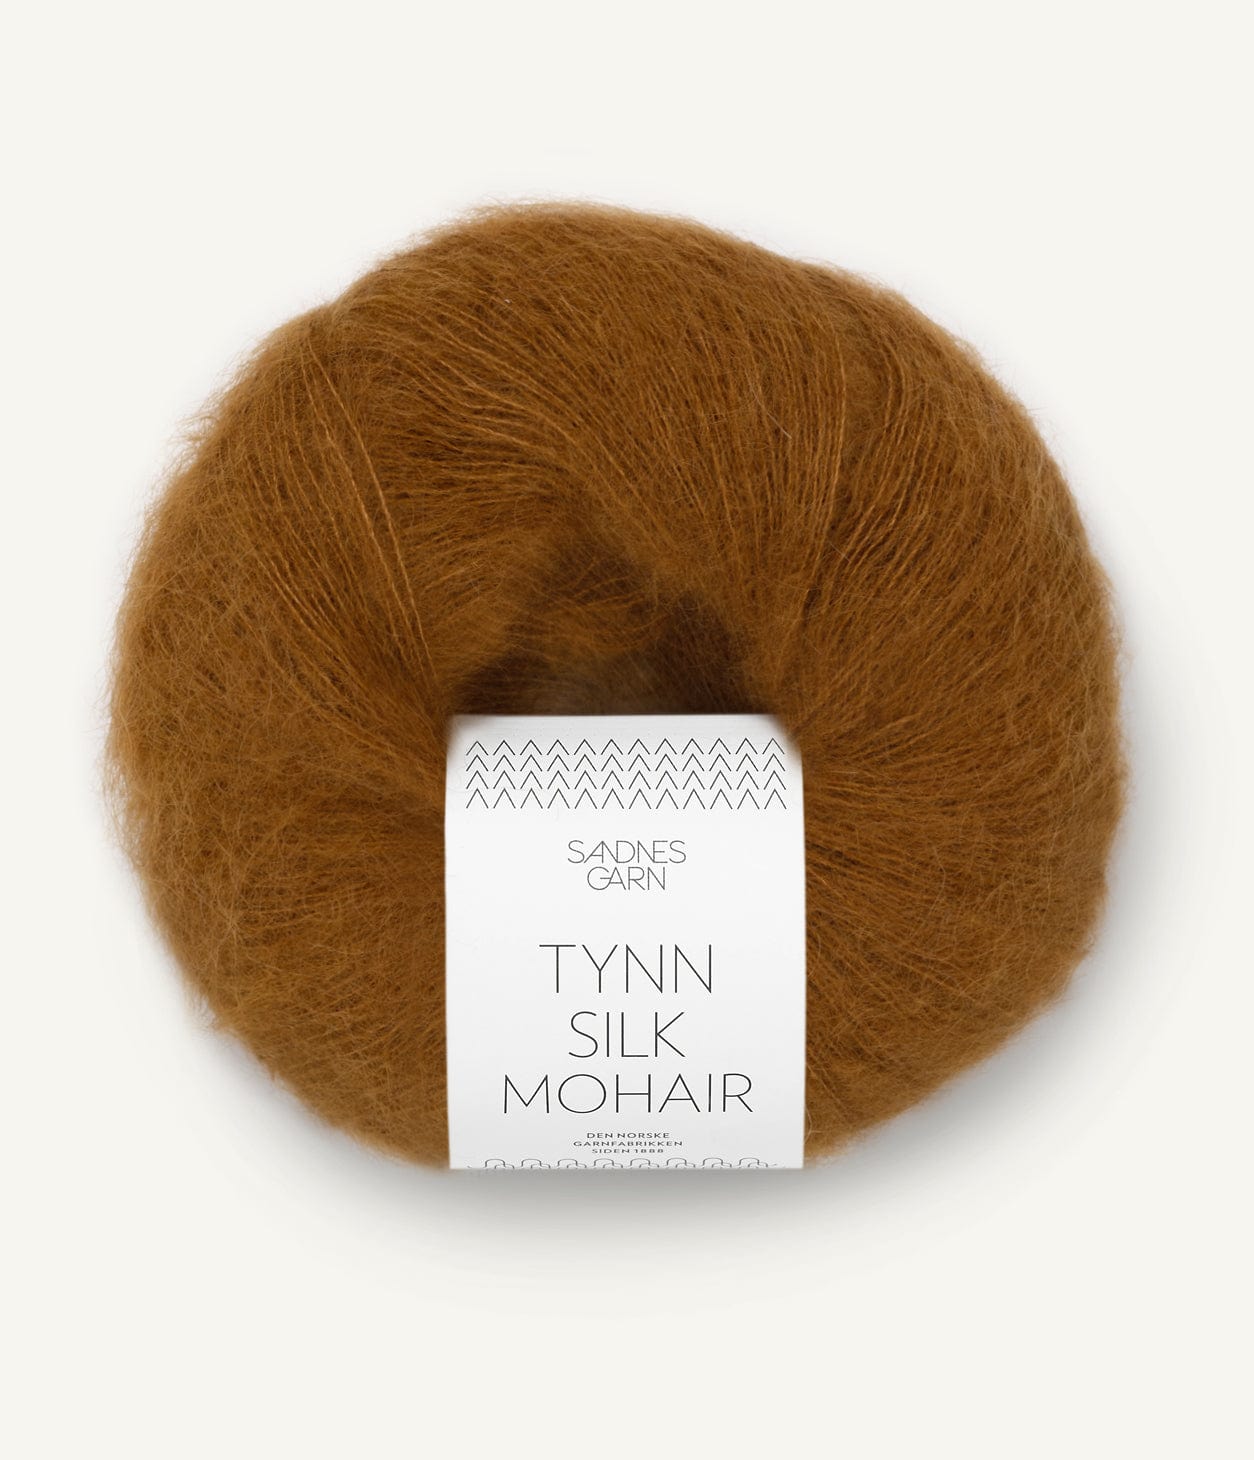 TYNN SILK MOHAIR von SANDNES jetzt online kaufen bei OONIQUE